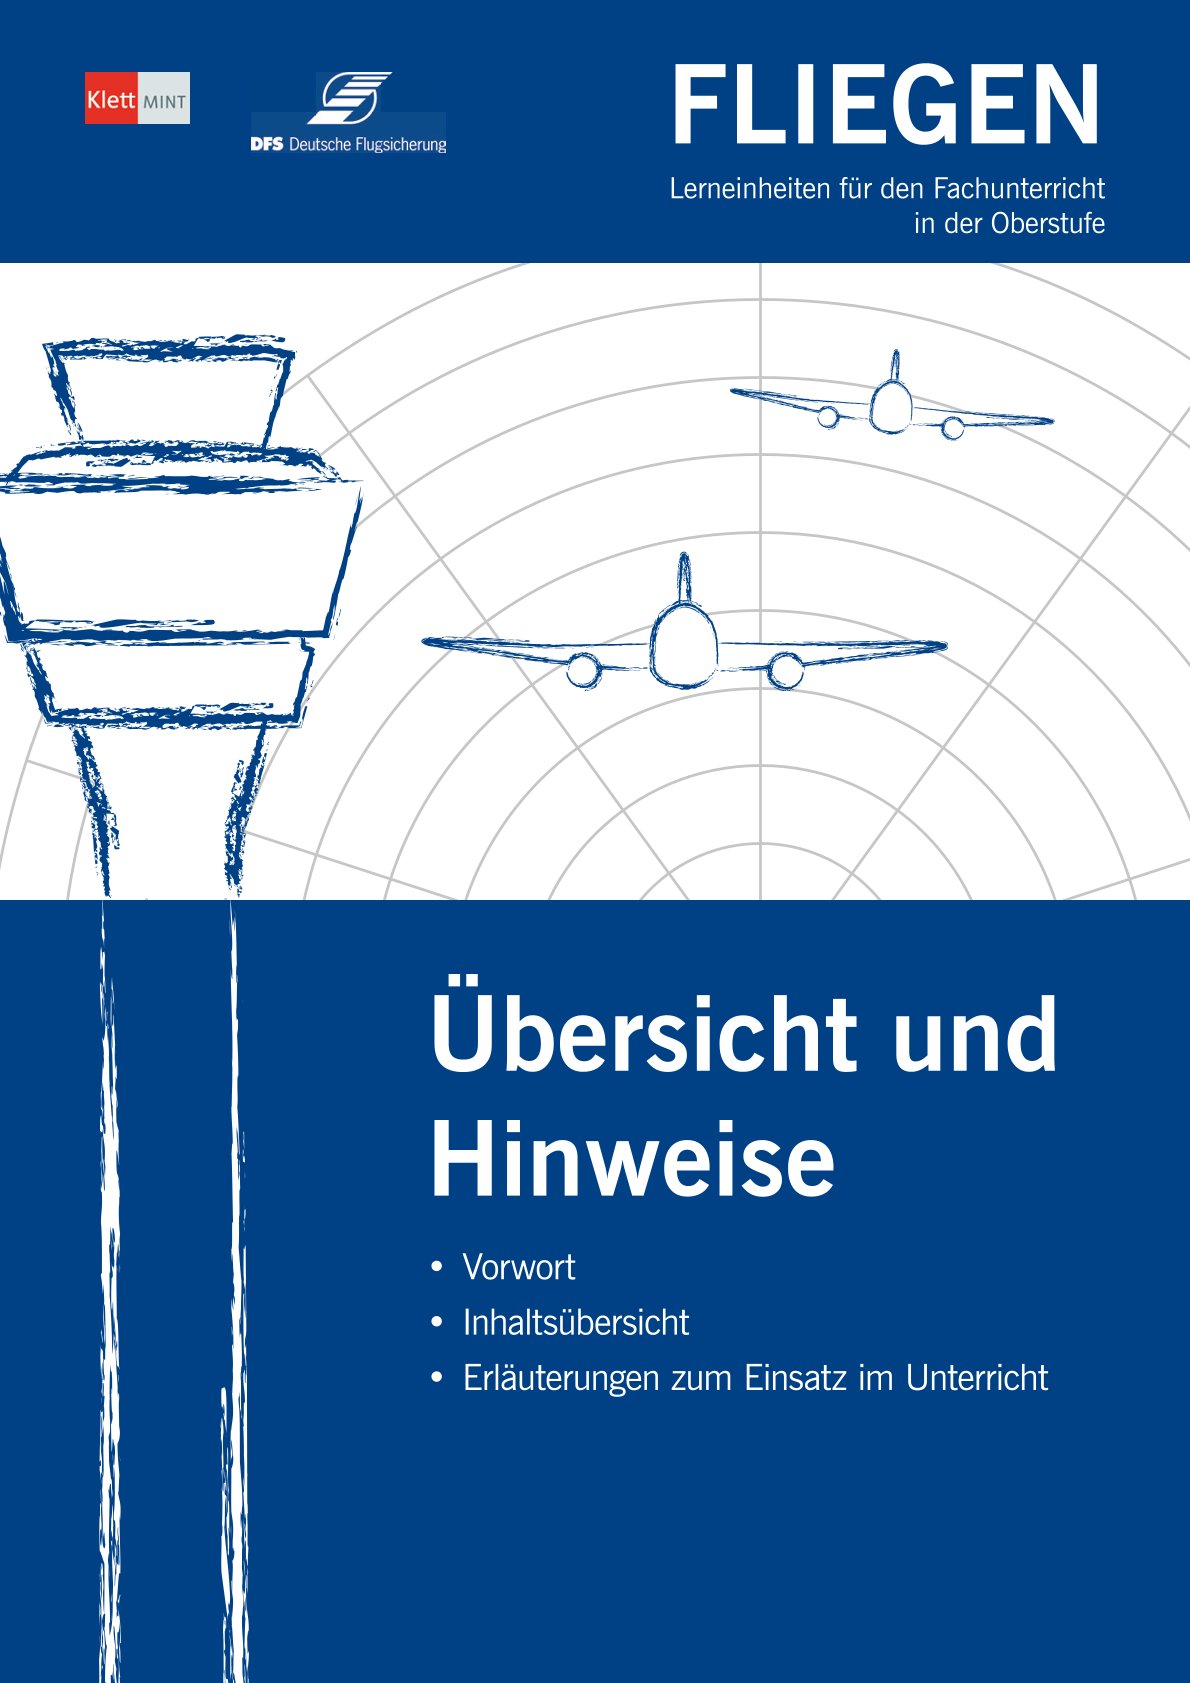 Cover des Lehrbuchs "Fliegen": Tower und Flugzeuge